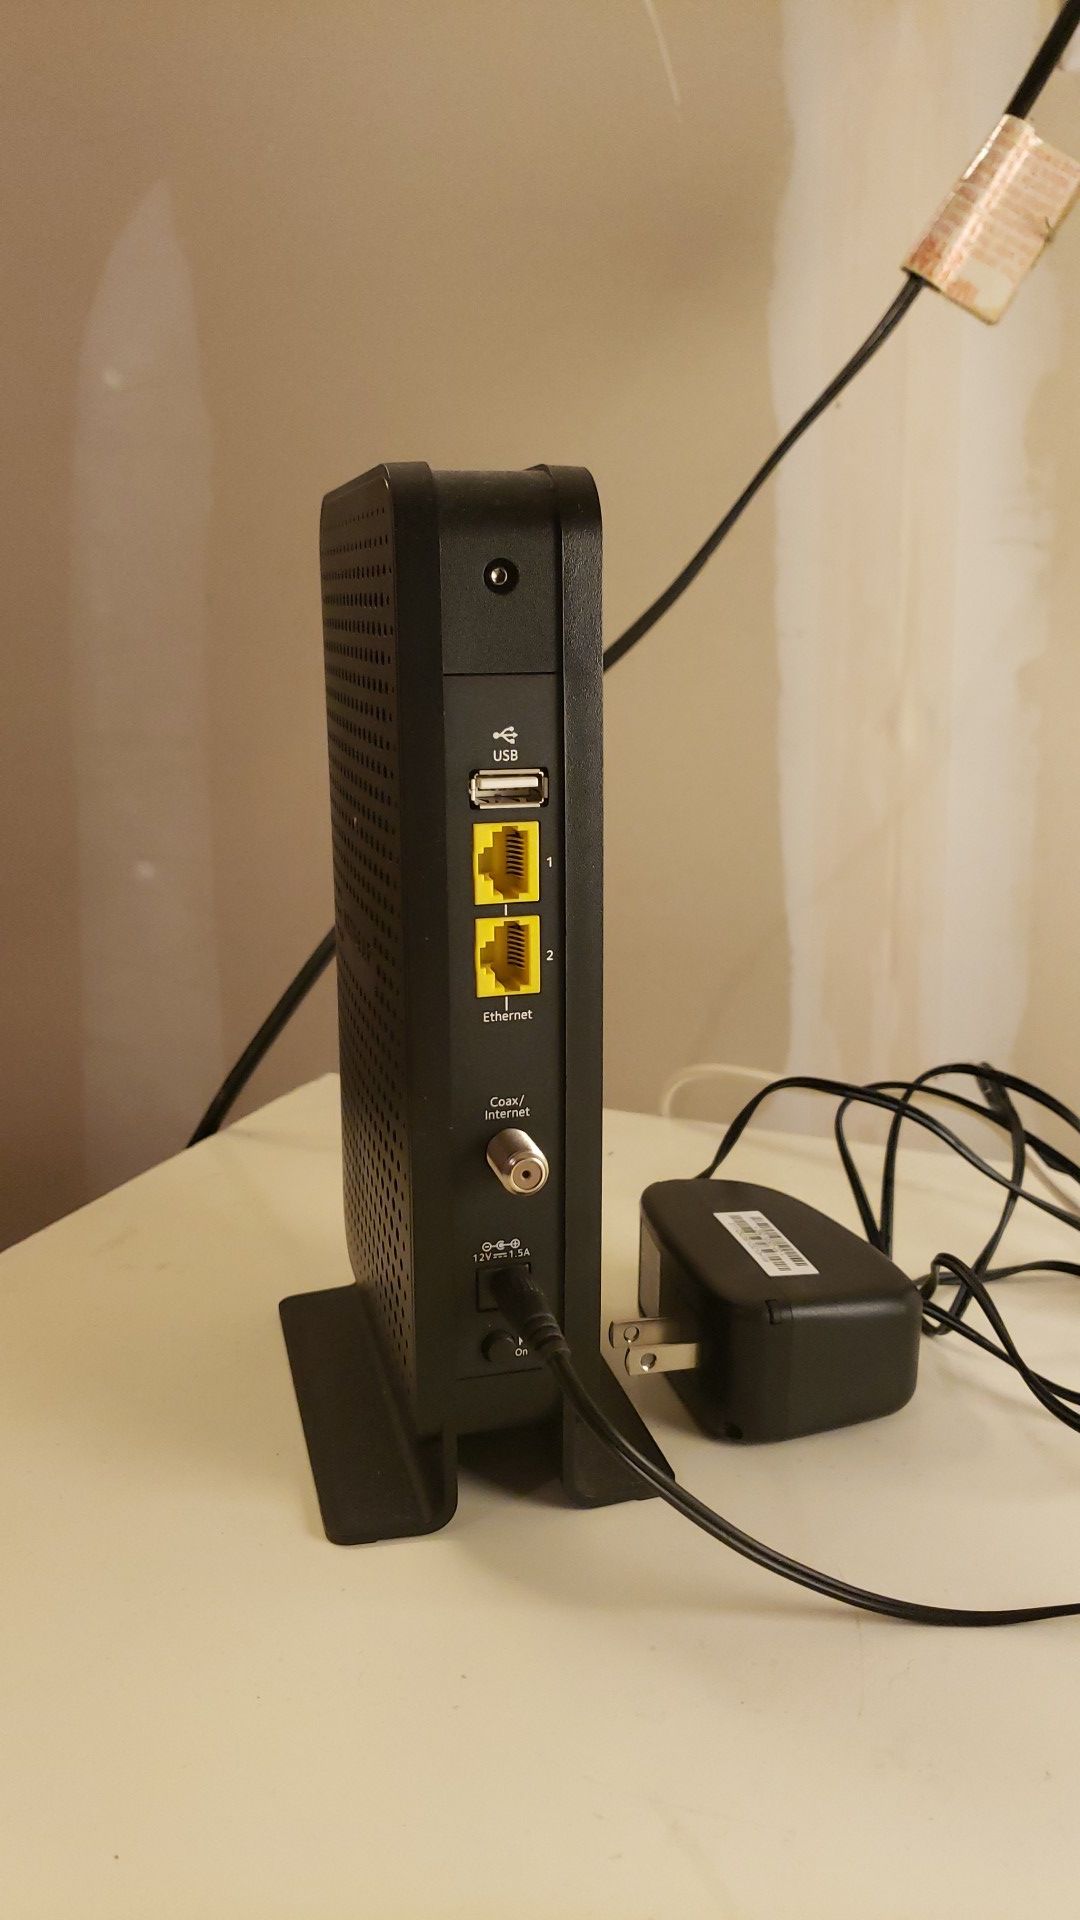 Netgear C3000 Wifi Cable Modem Router